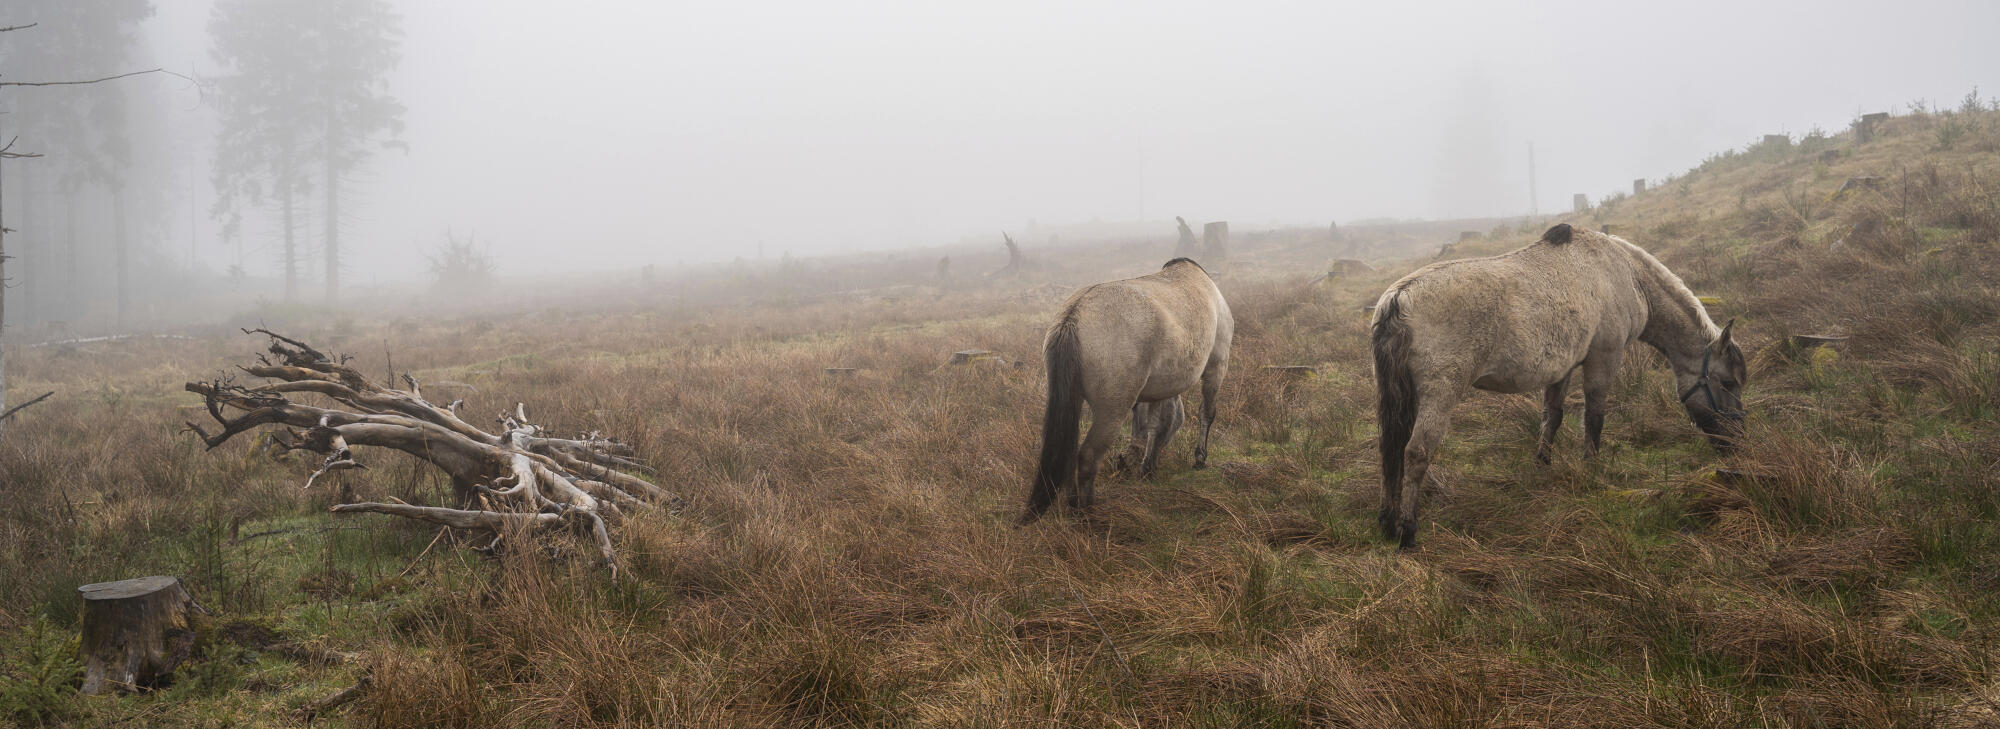 Im herbstlichen Nebel stehen zwei Konikpferde auf einer Weide.